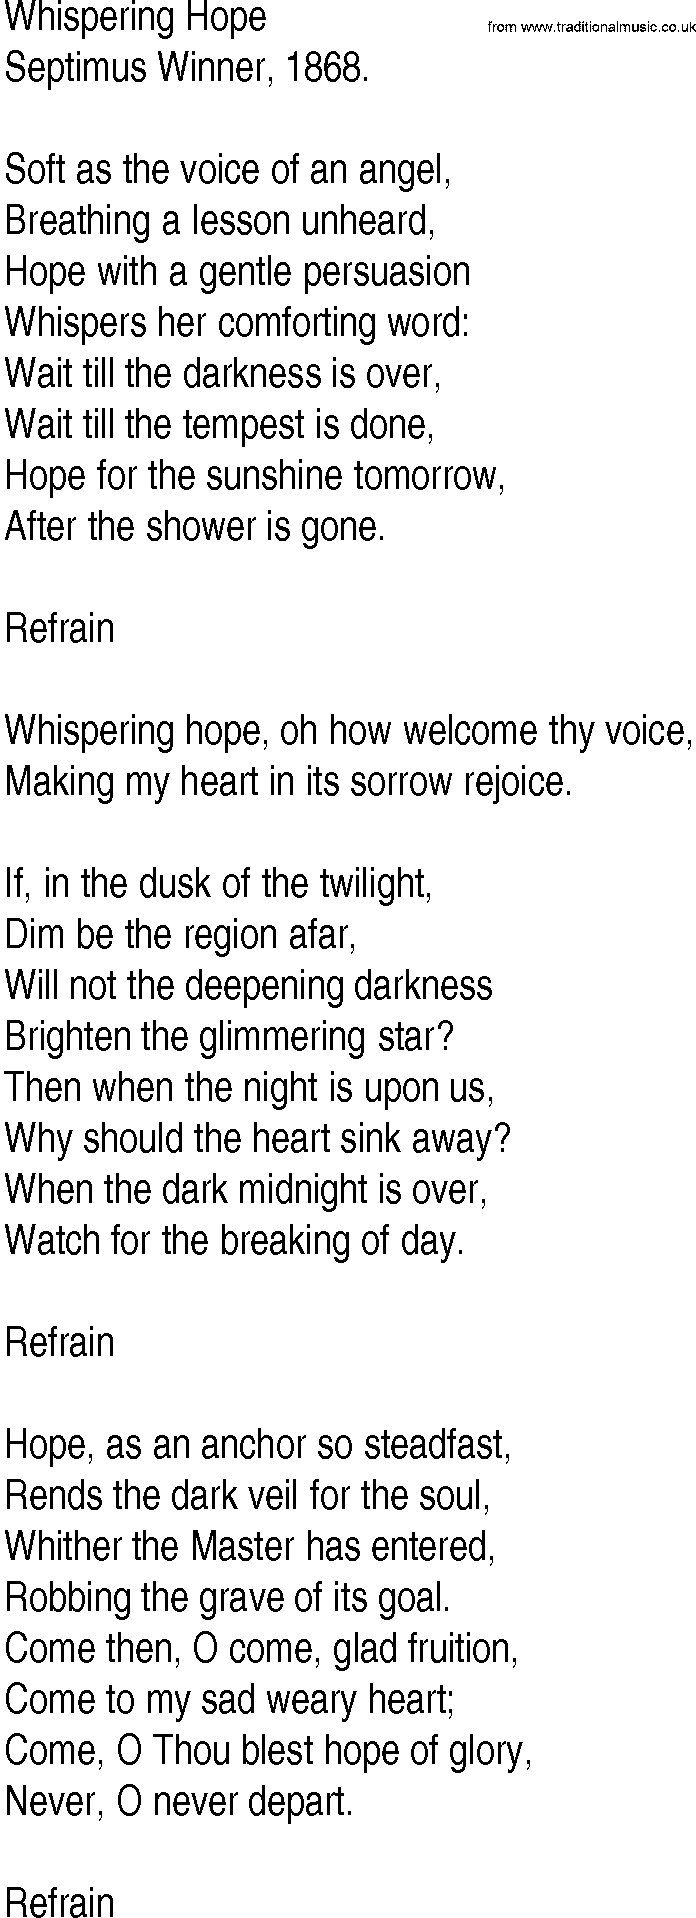 Hymn and Gospel Song: Whispering Hope by Septimus Winner lyrics